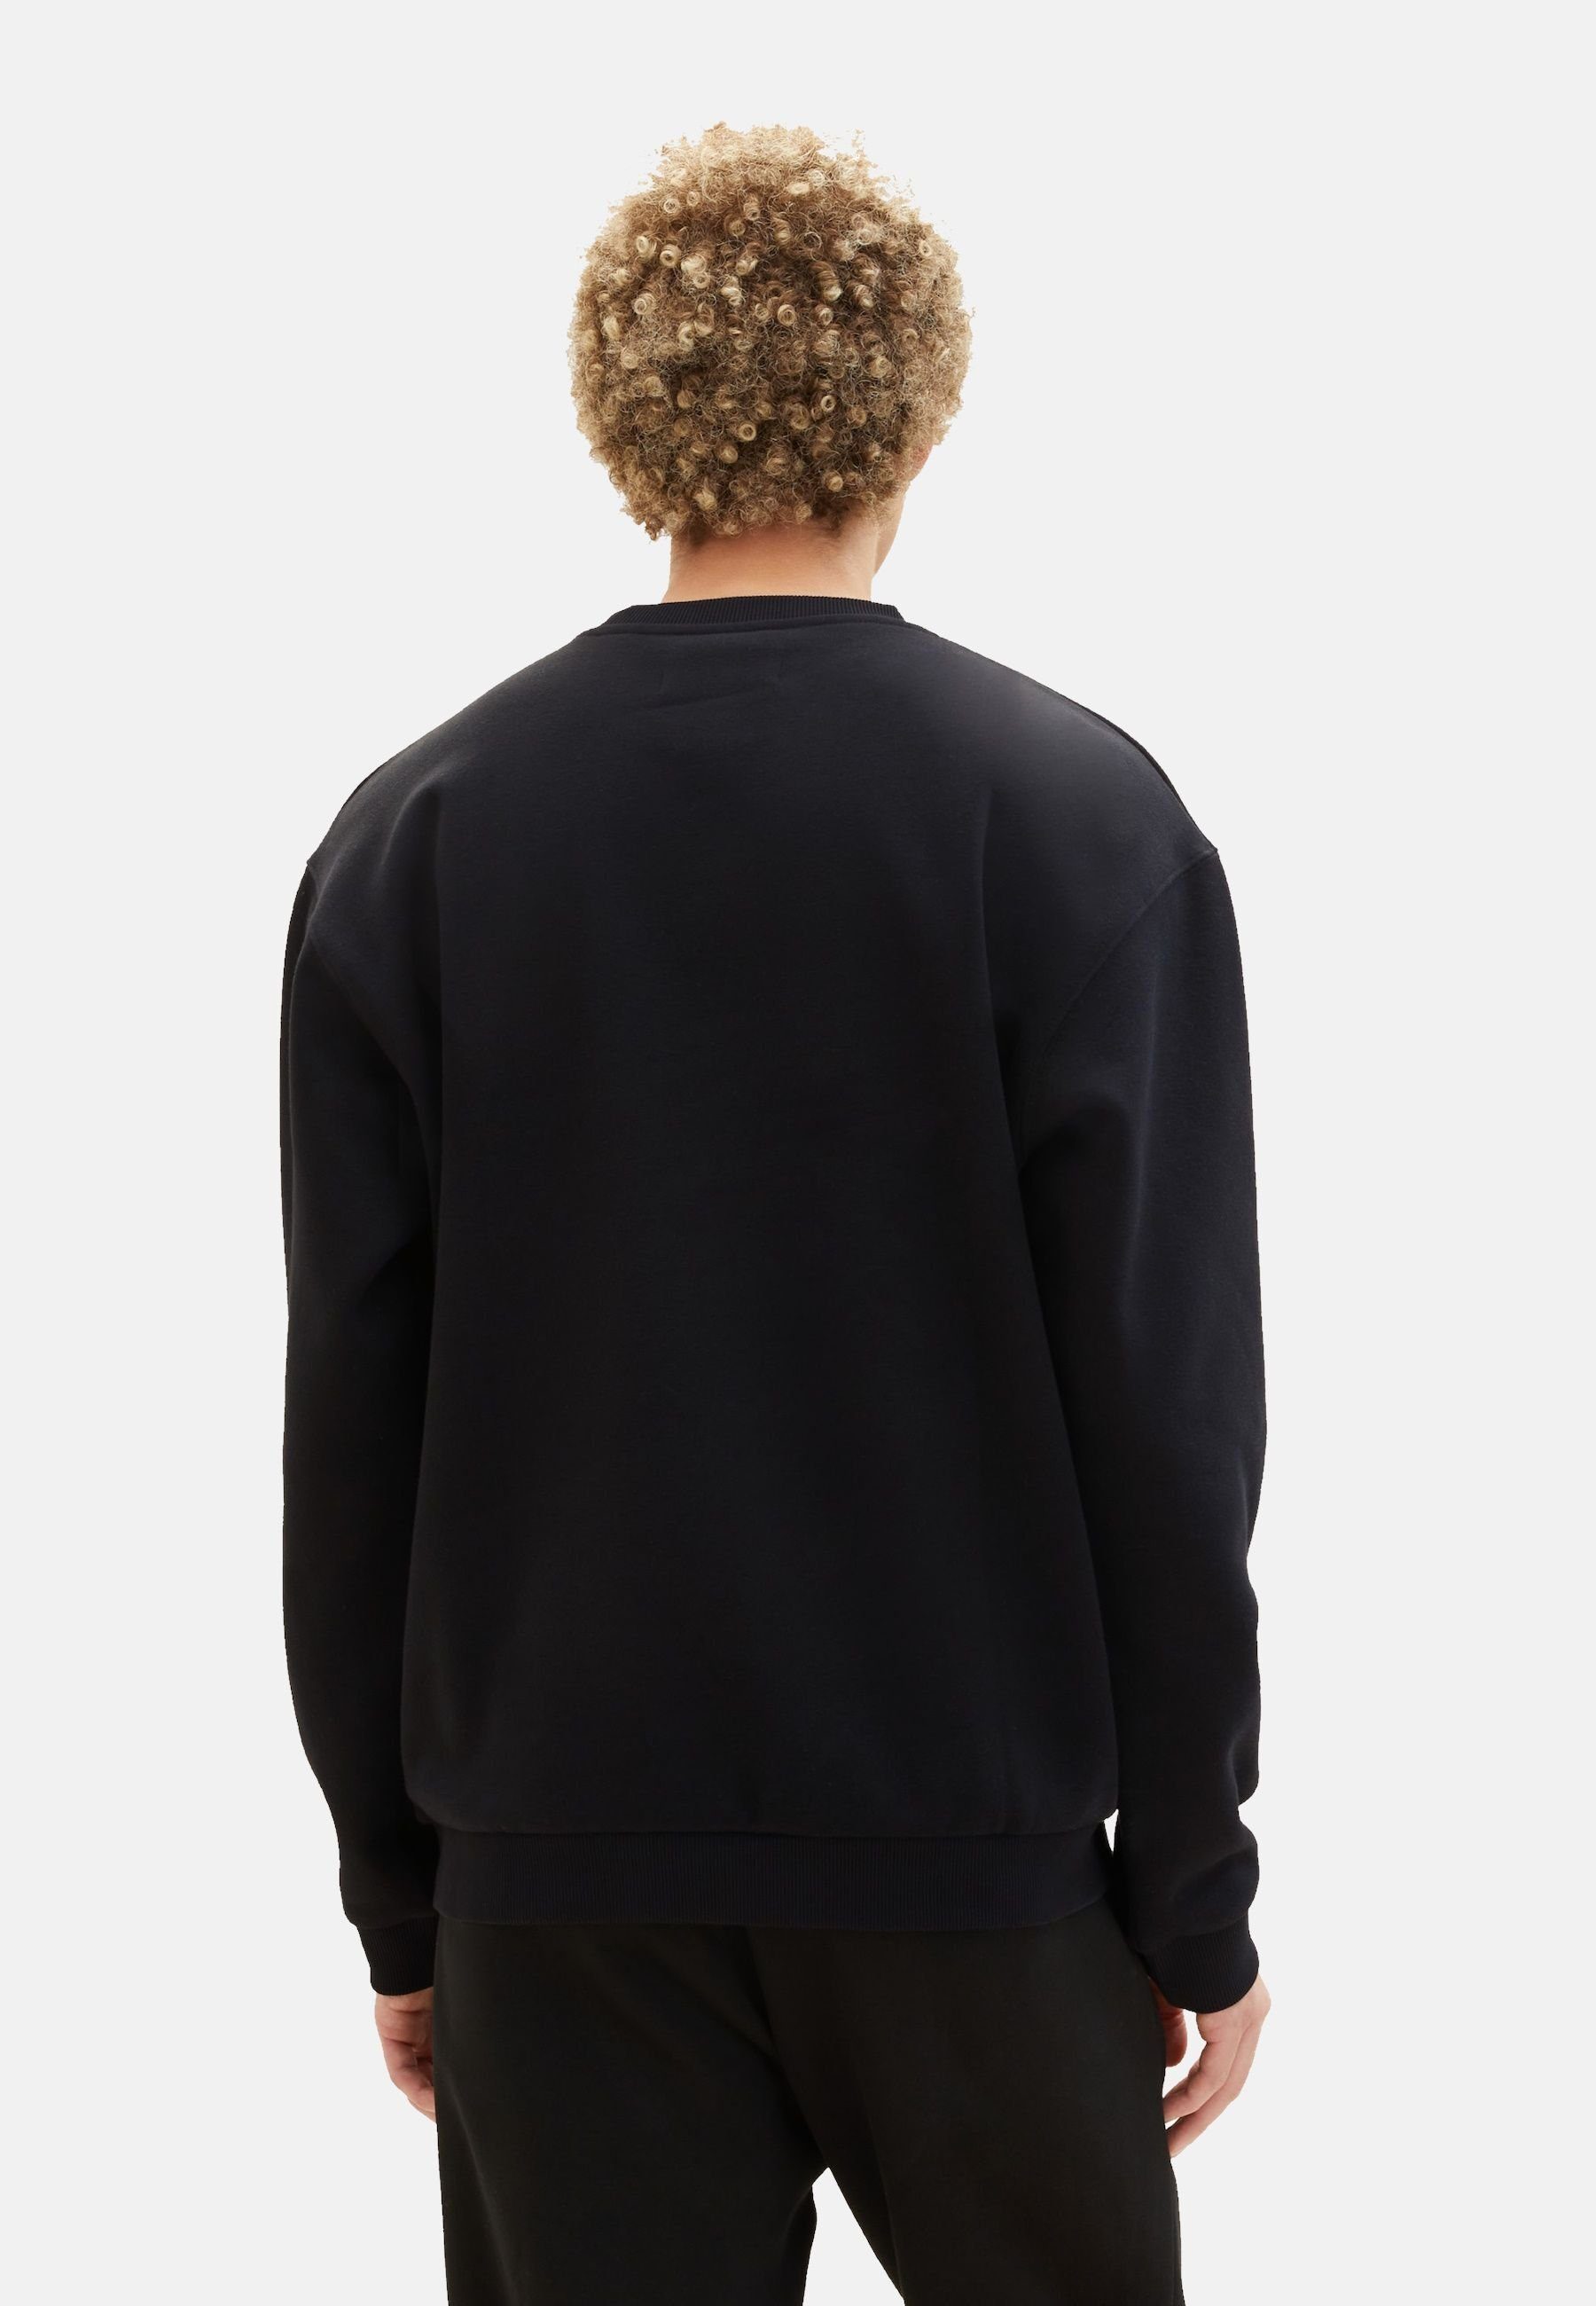 kleinem ohne Denim TAILOR schwarz TAILOR (1-tlg) TOM Sweatshirt Sweatshirt Kapuze Pullover mit TOM